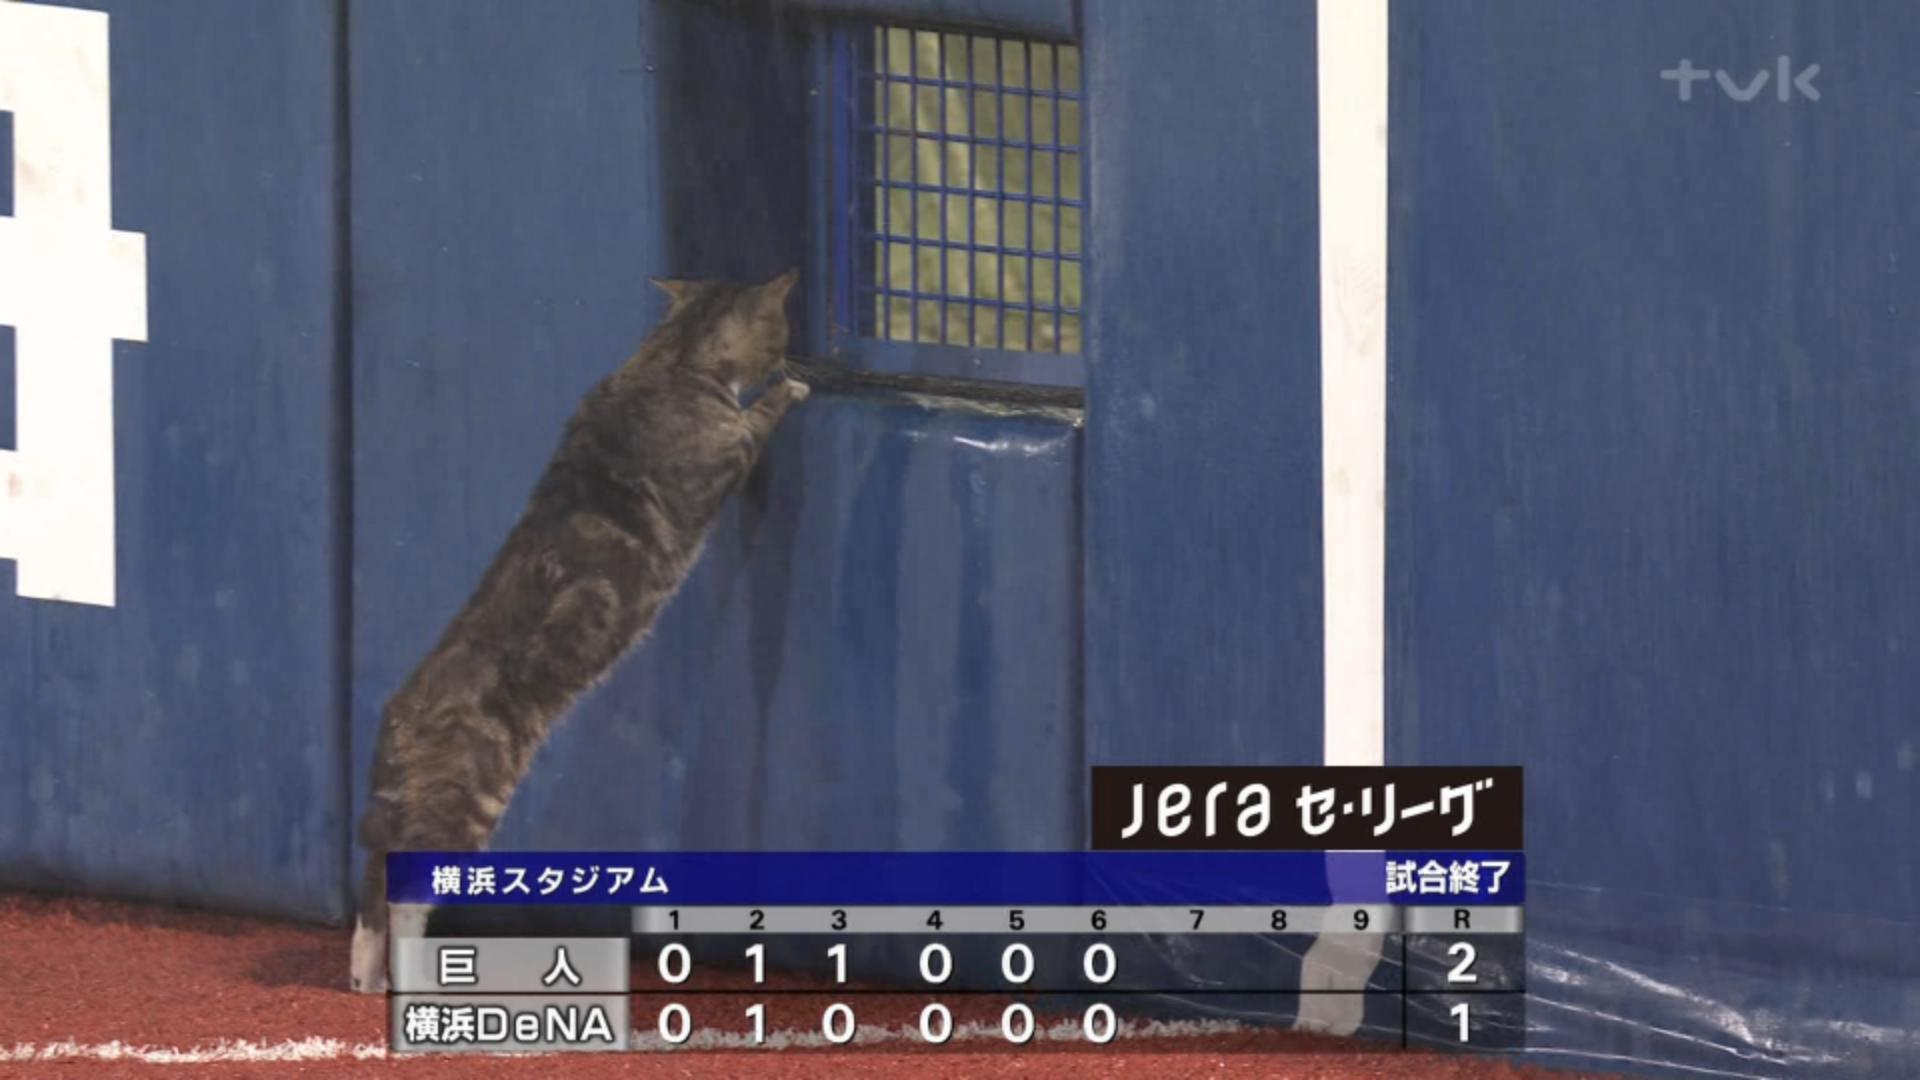 Tomo 雨天コールド後の横浜スタジアムに猫乱入 レフト側の普段開いてる場所が閉まってて困惑する猫めっちゃ可愛い